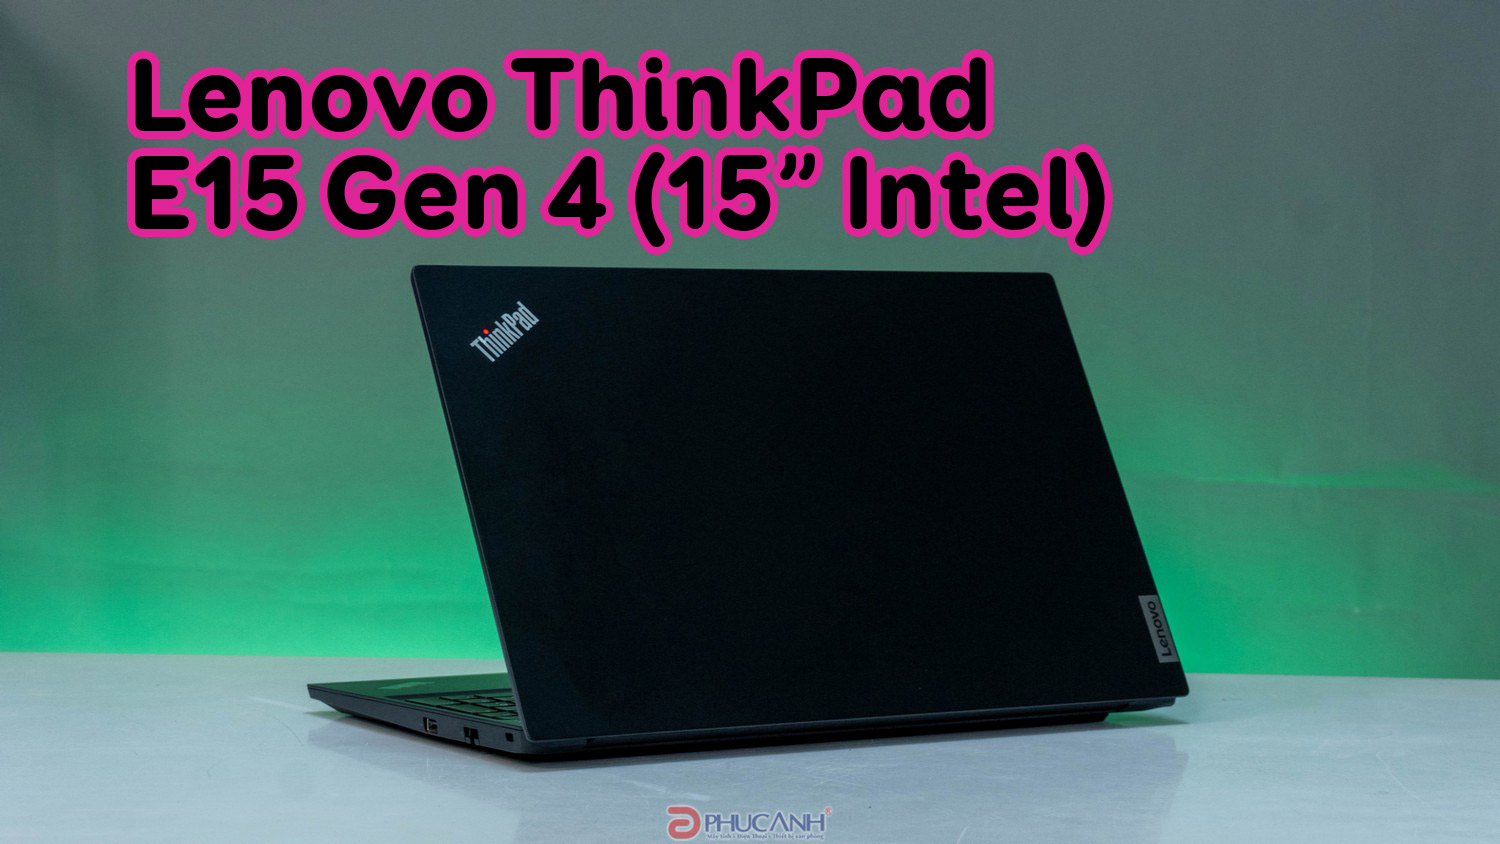 Đánh giá Lenovo ThinkPad E15 Gen 4 (15” Intel) - bảo mật cao cấp, hiệu năng ấn tượng